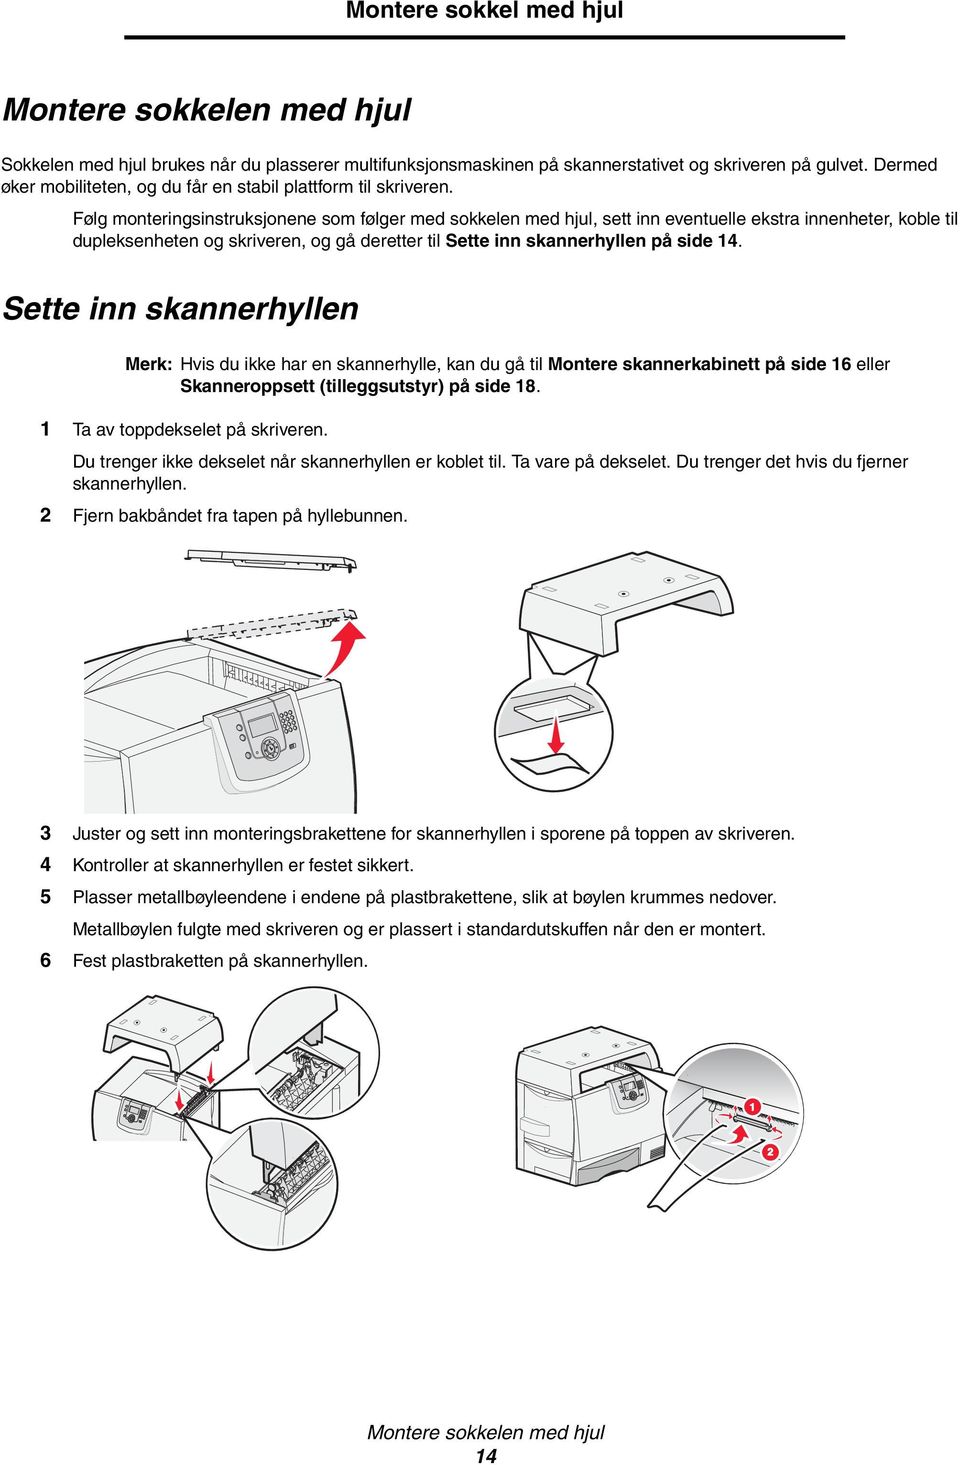 Følg monteringsinstruksjonene som følger med sokkelen med hjul, sett inn eventuelle ekstra innenheter, koble til dupleksenheten og skriveren, og gå deretter til Sette inn skannerhyllen på side 14.